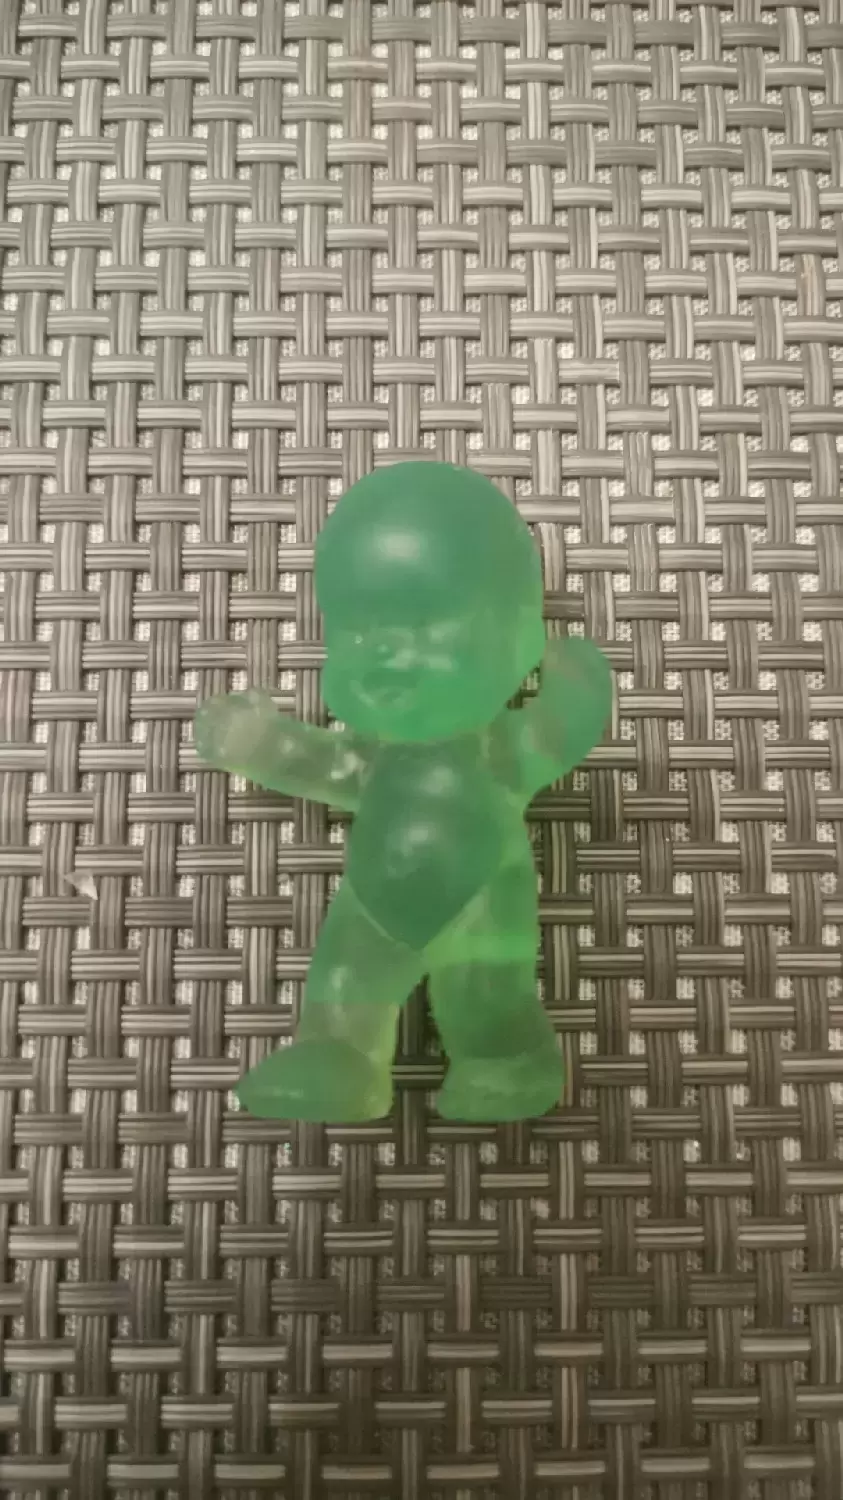 Les Babies Série 1 - Zéphyrin bout en train vert fluo translucide